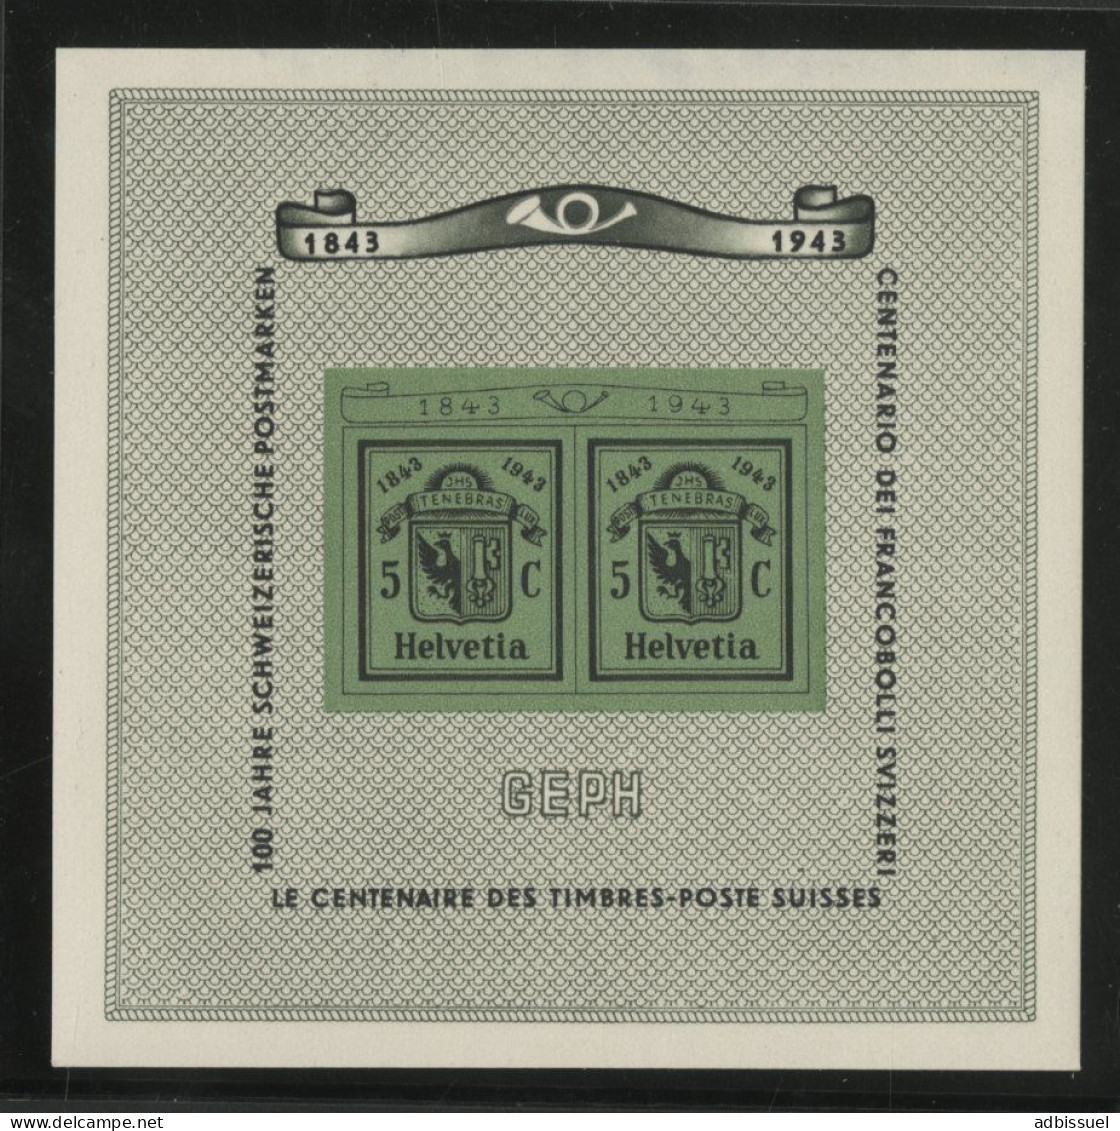 SUISSE Bloc N° 10 Neuf ** (MNH) Cote 80 € Exposition De Genève 1943, Centenaire Des Timbres-Poste Suisses. - Blocs & Feuillets